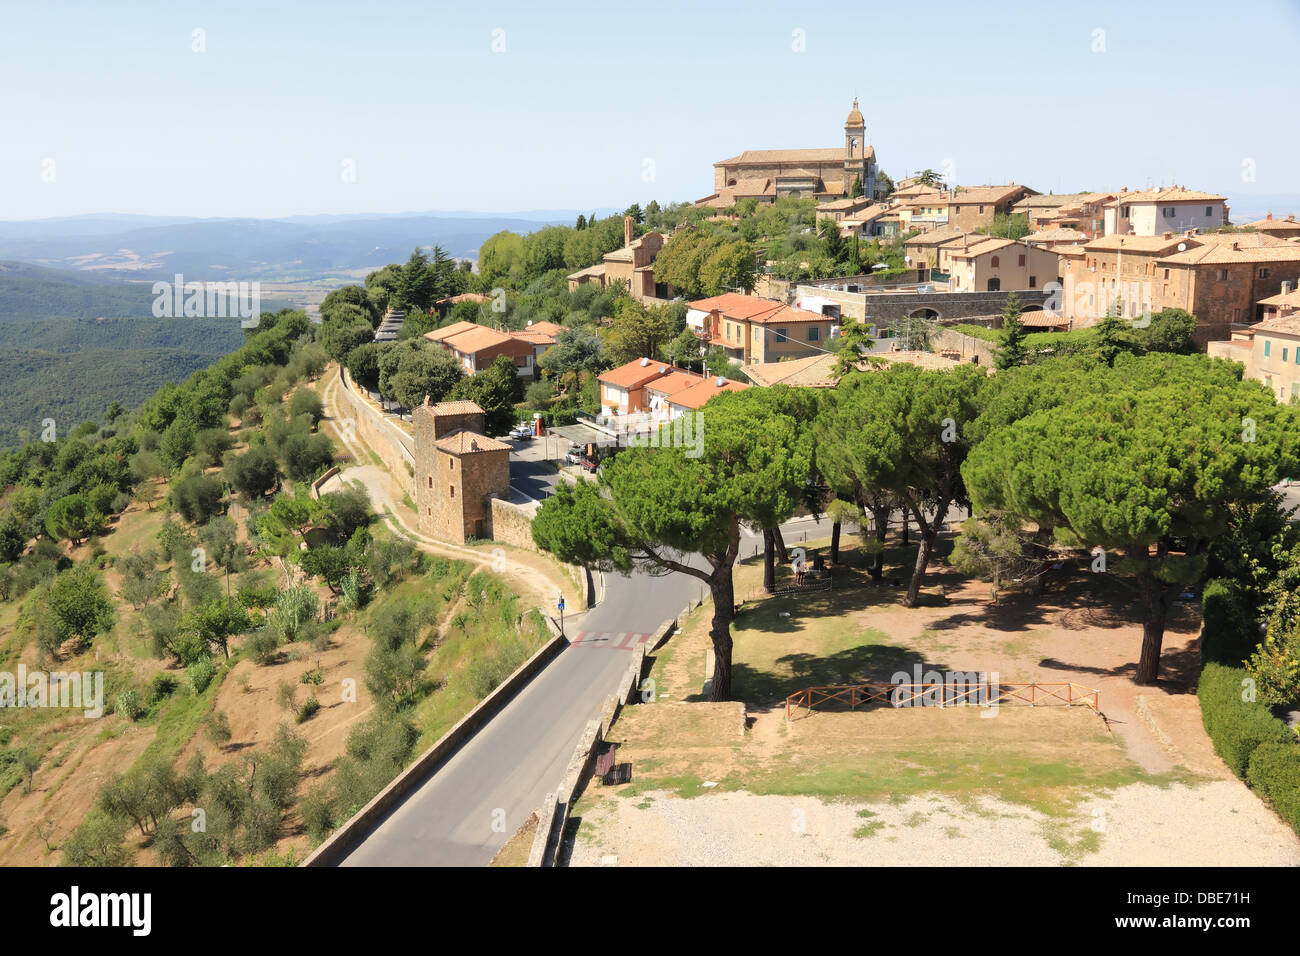 Montalcino, accueil de vin Brunello. La toscane, italie Banque D'Images